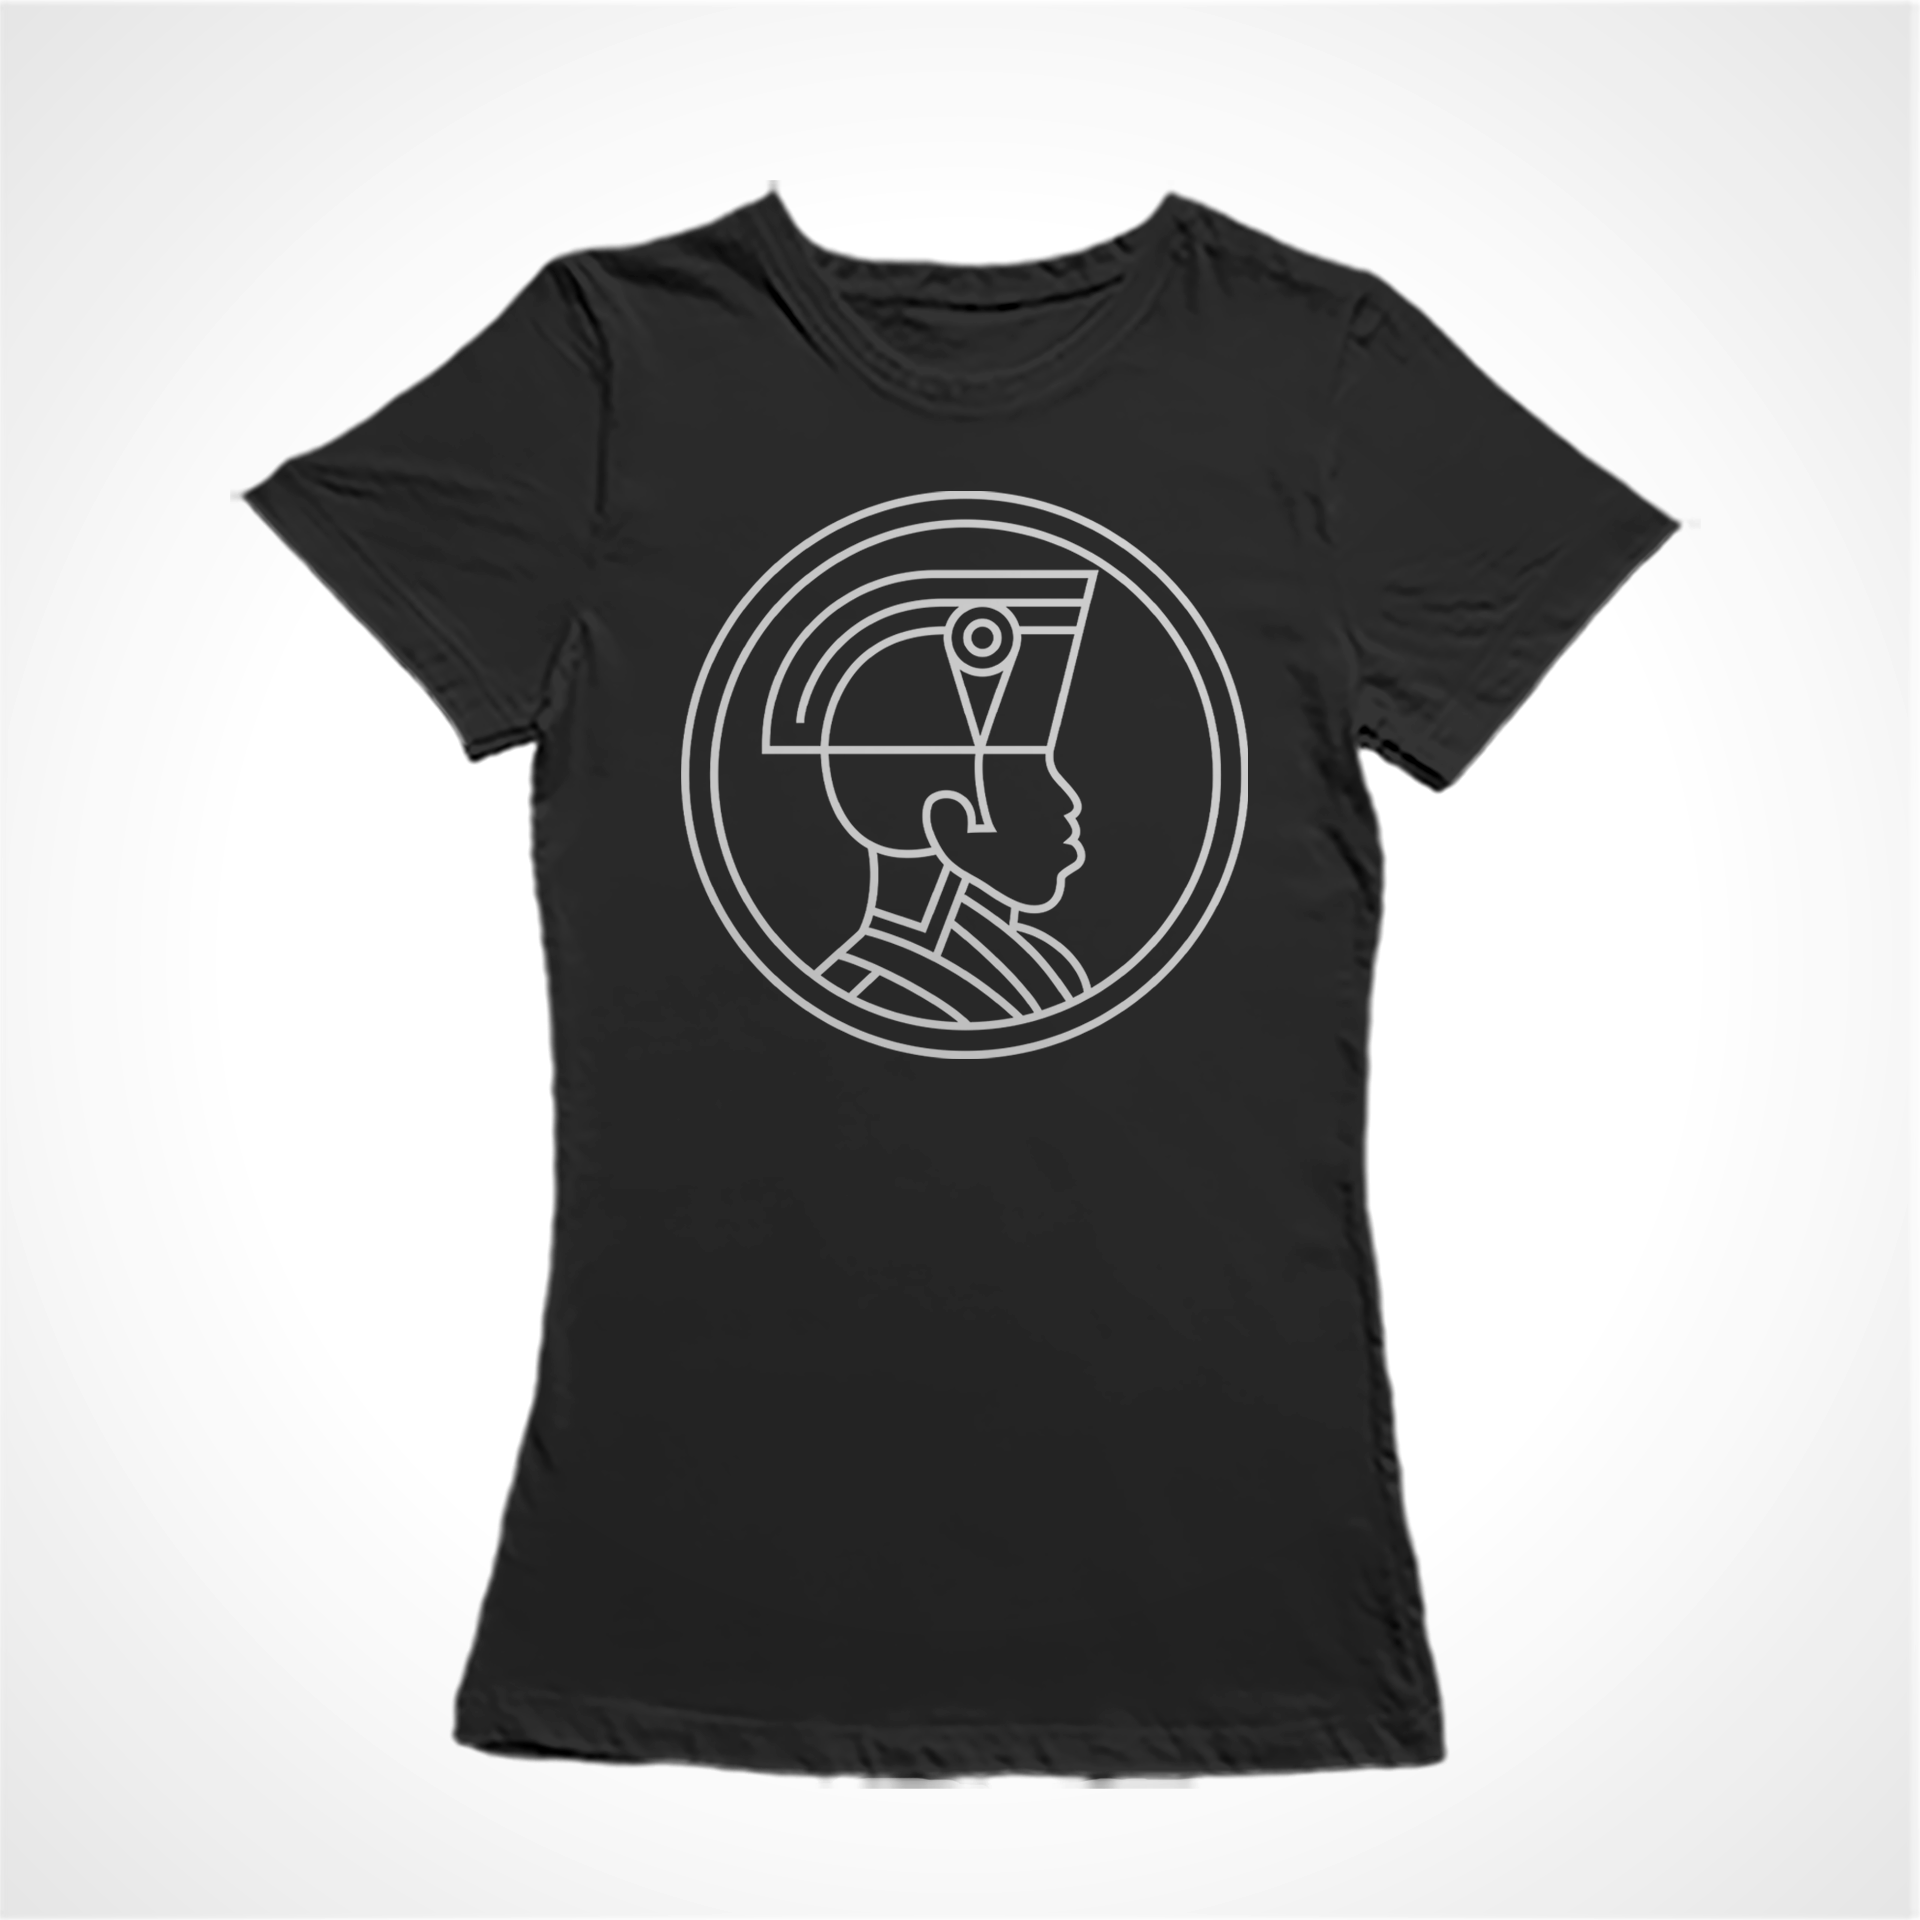 Camiseta Baby Look Estampa:  Jacobino negro com perfil traçado e circulado em volta.